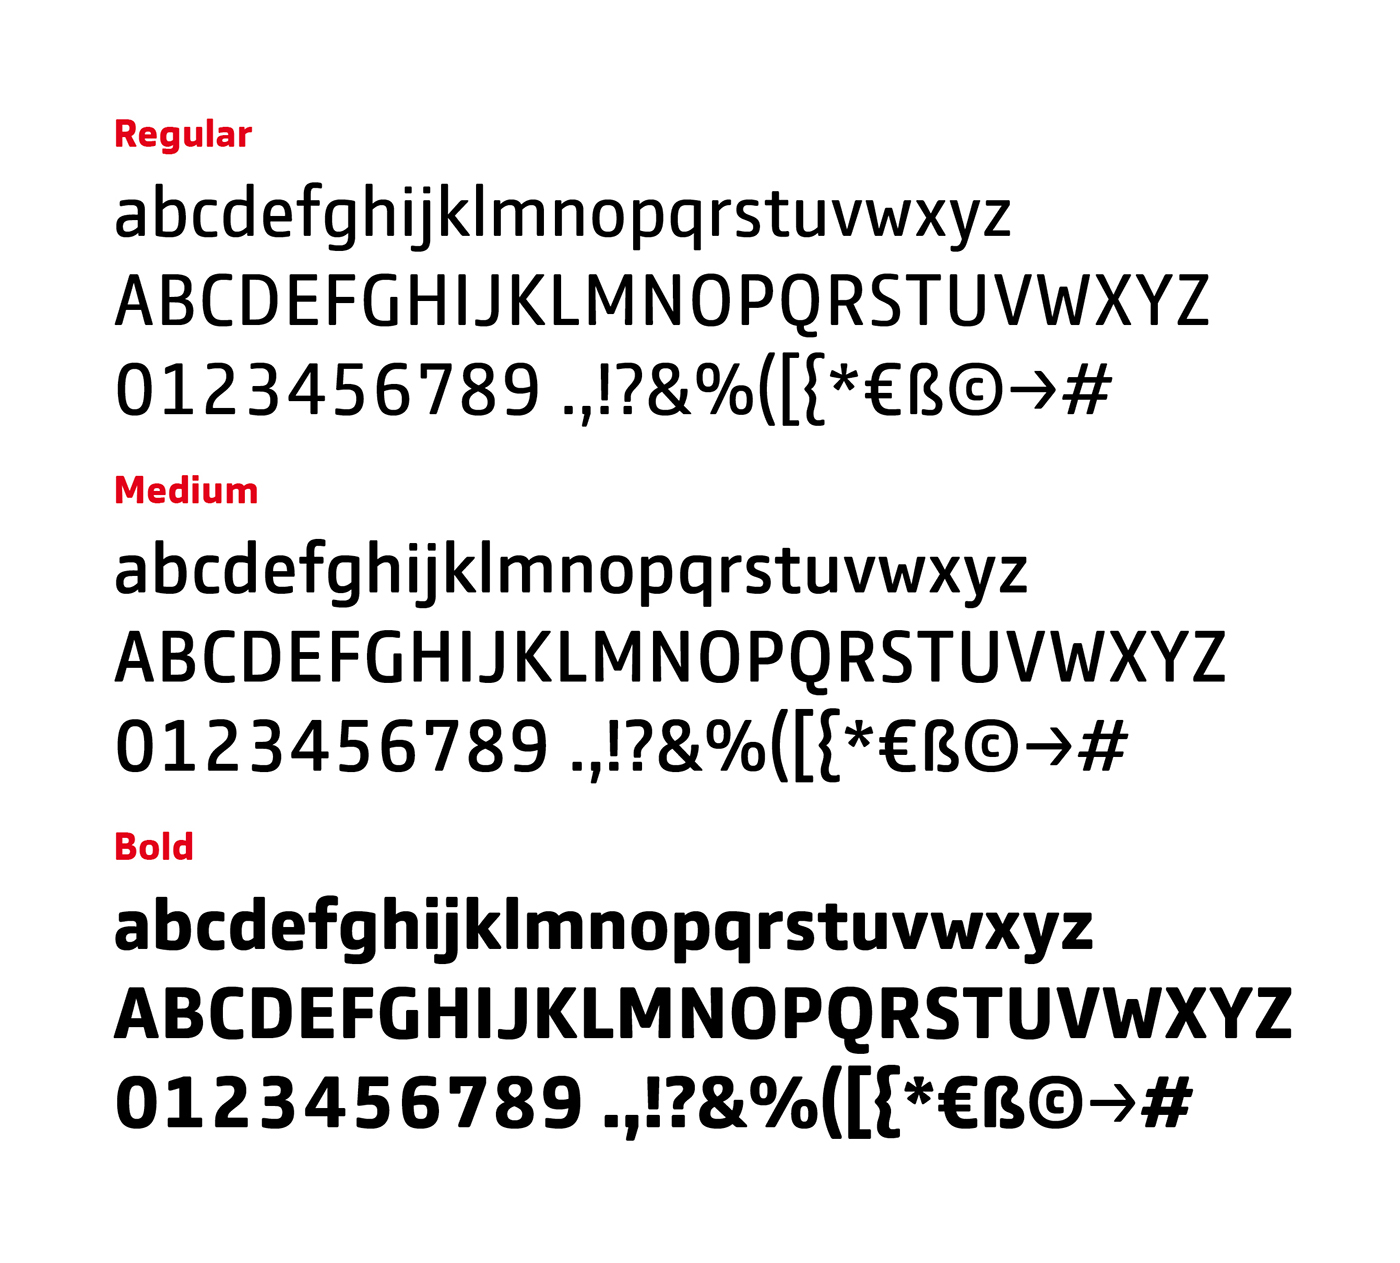 corporate font typewriter monospaced digital